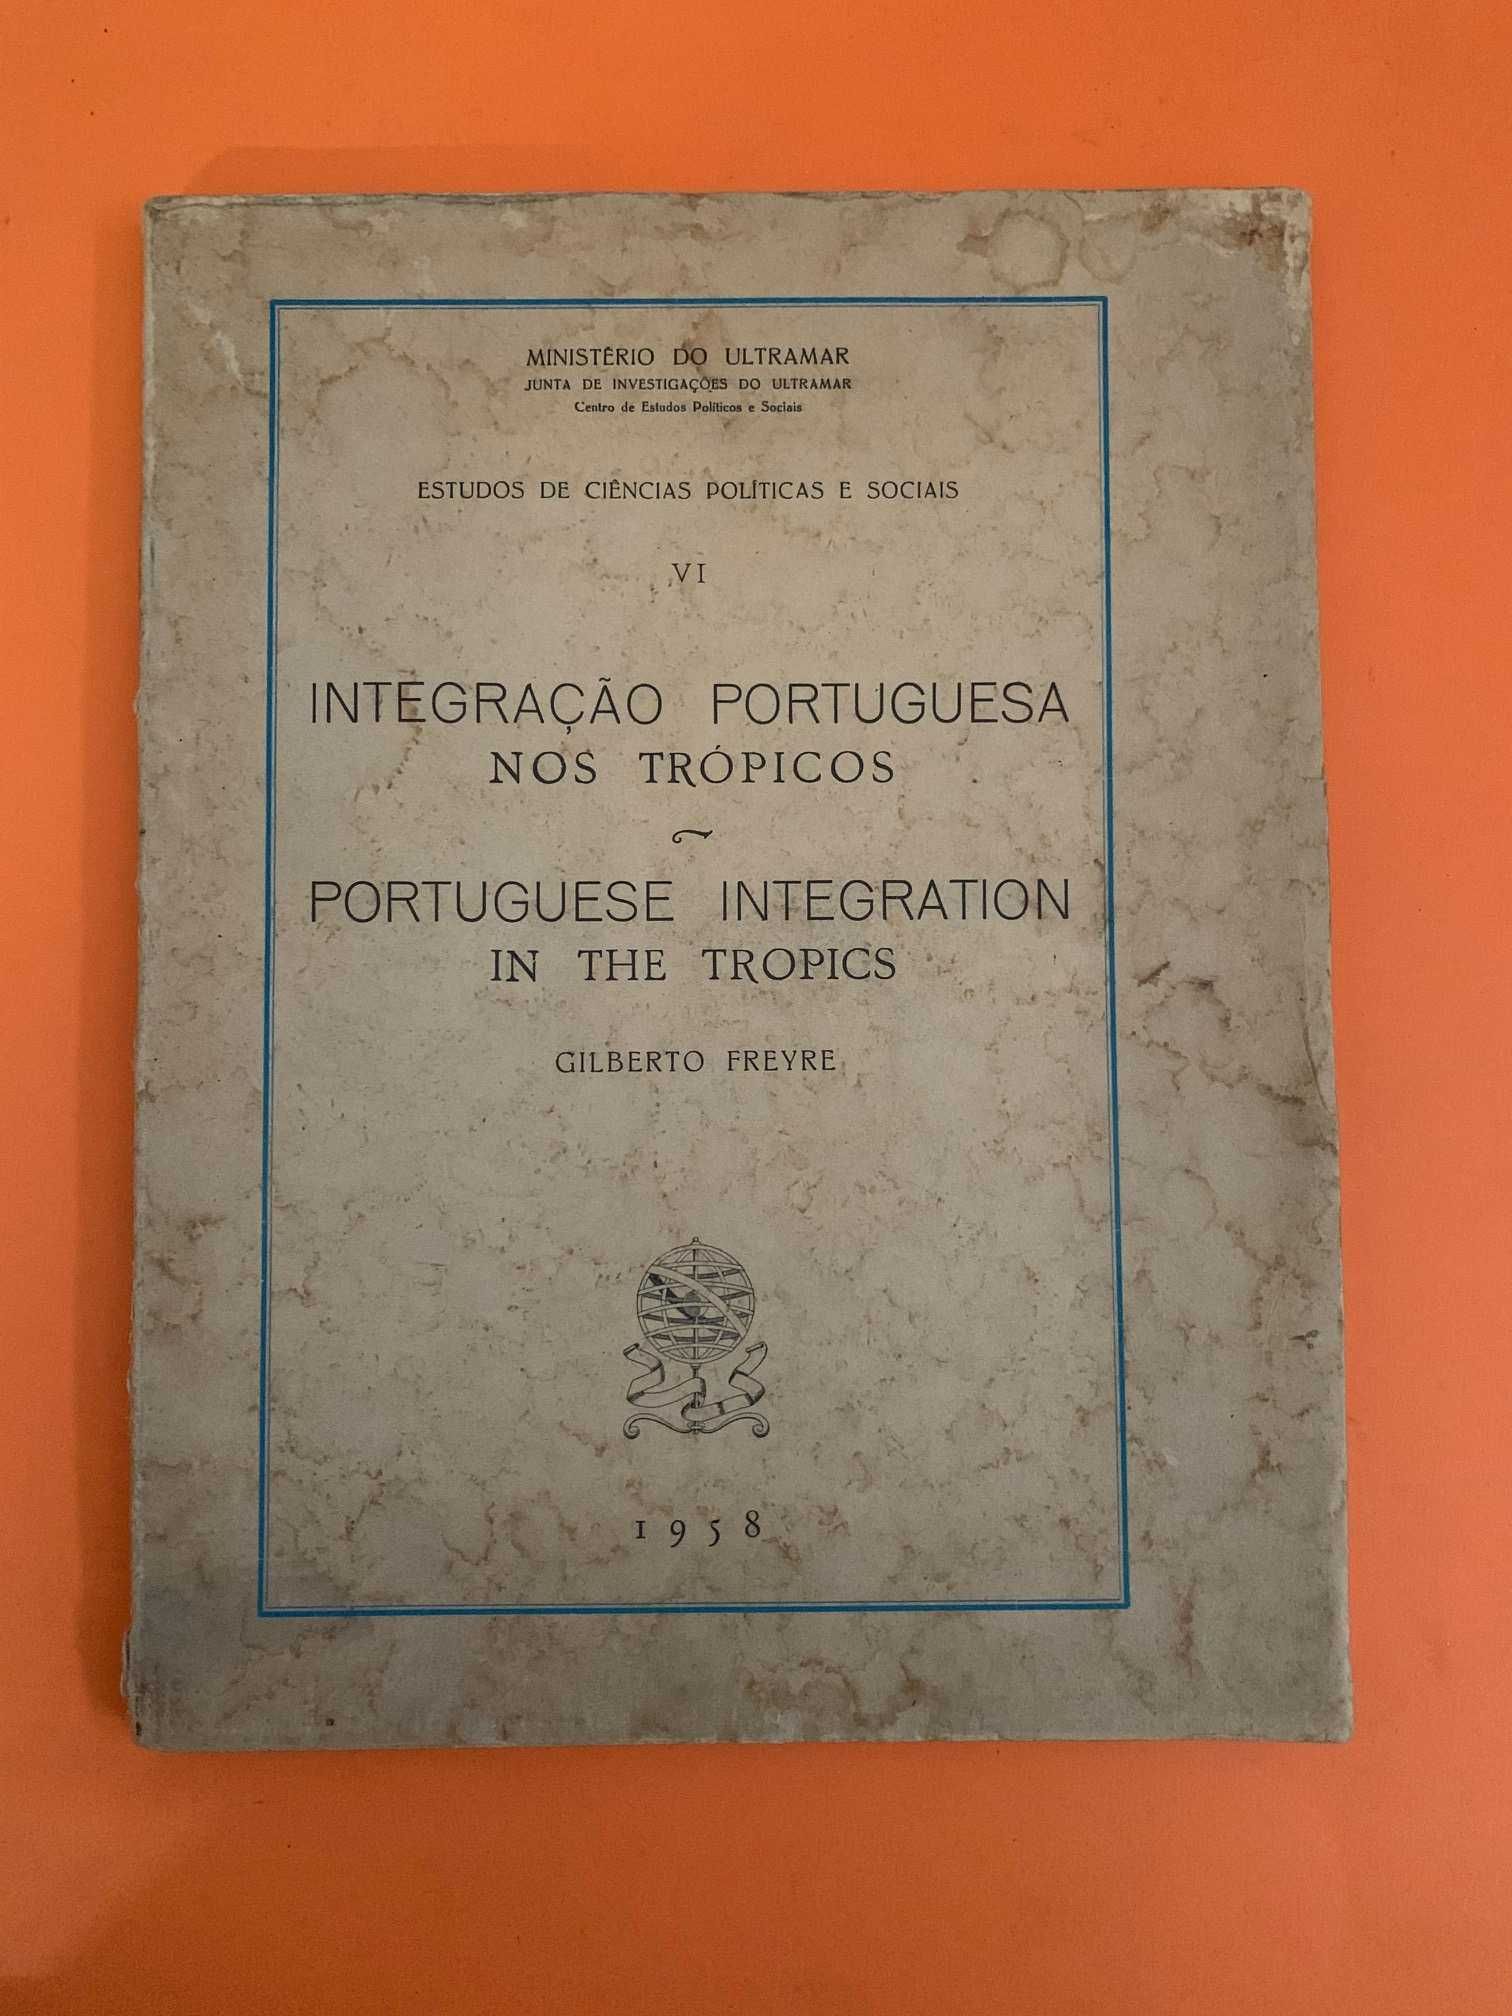 Integração Portuguesa nos Trópicos - Gilberto Freyre